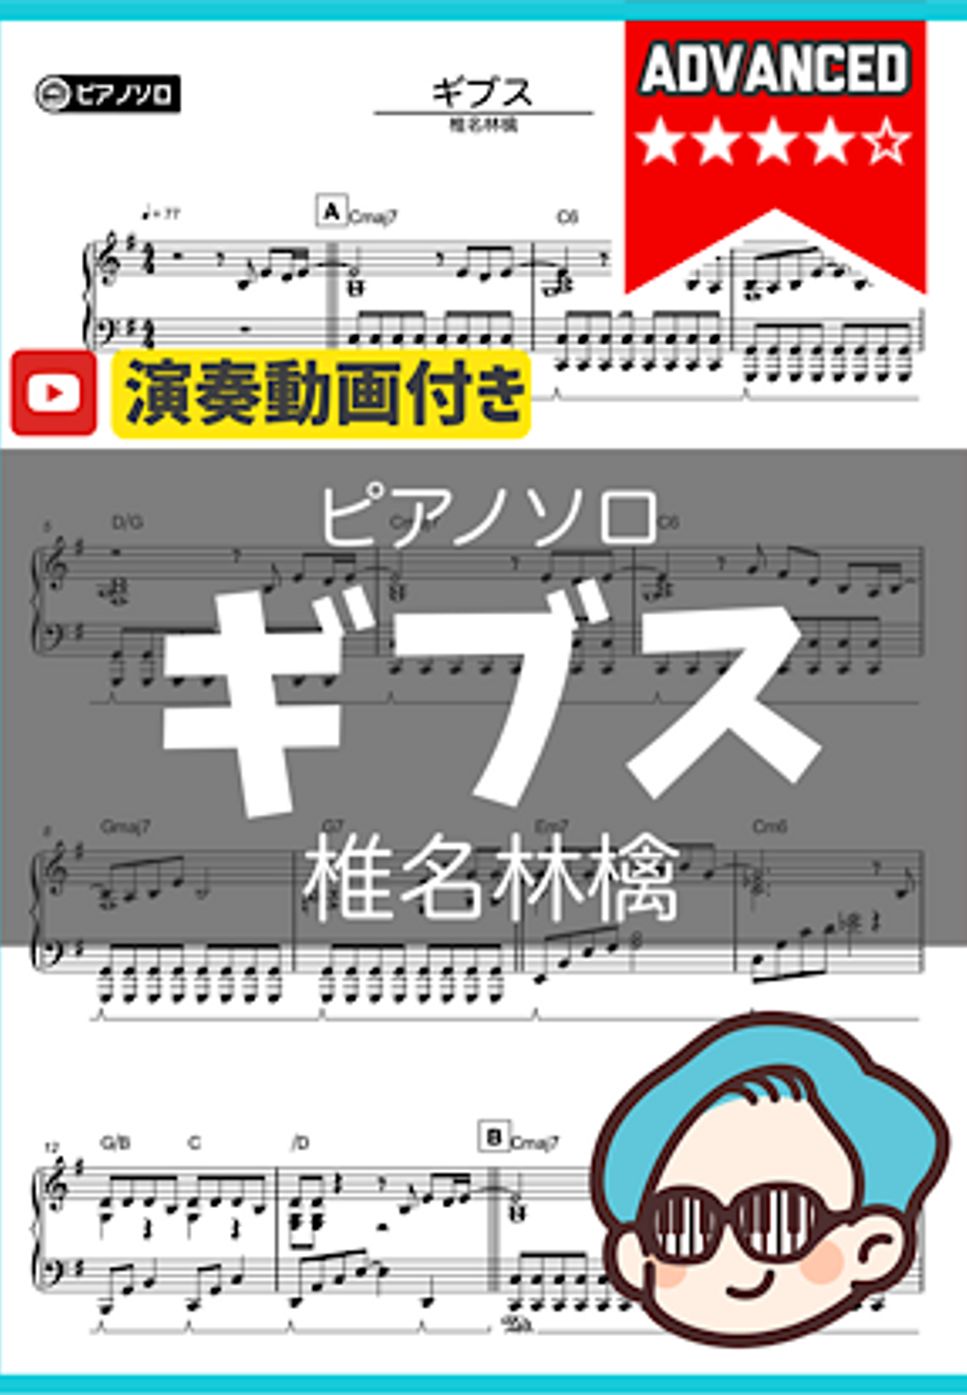 椎名林檎 - ギブス by シータピアノ